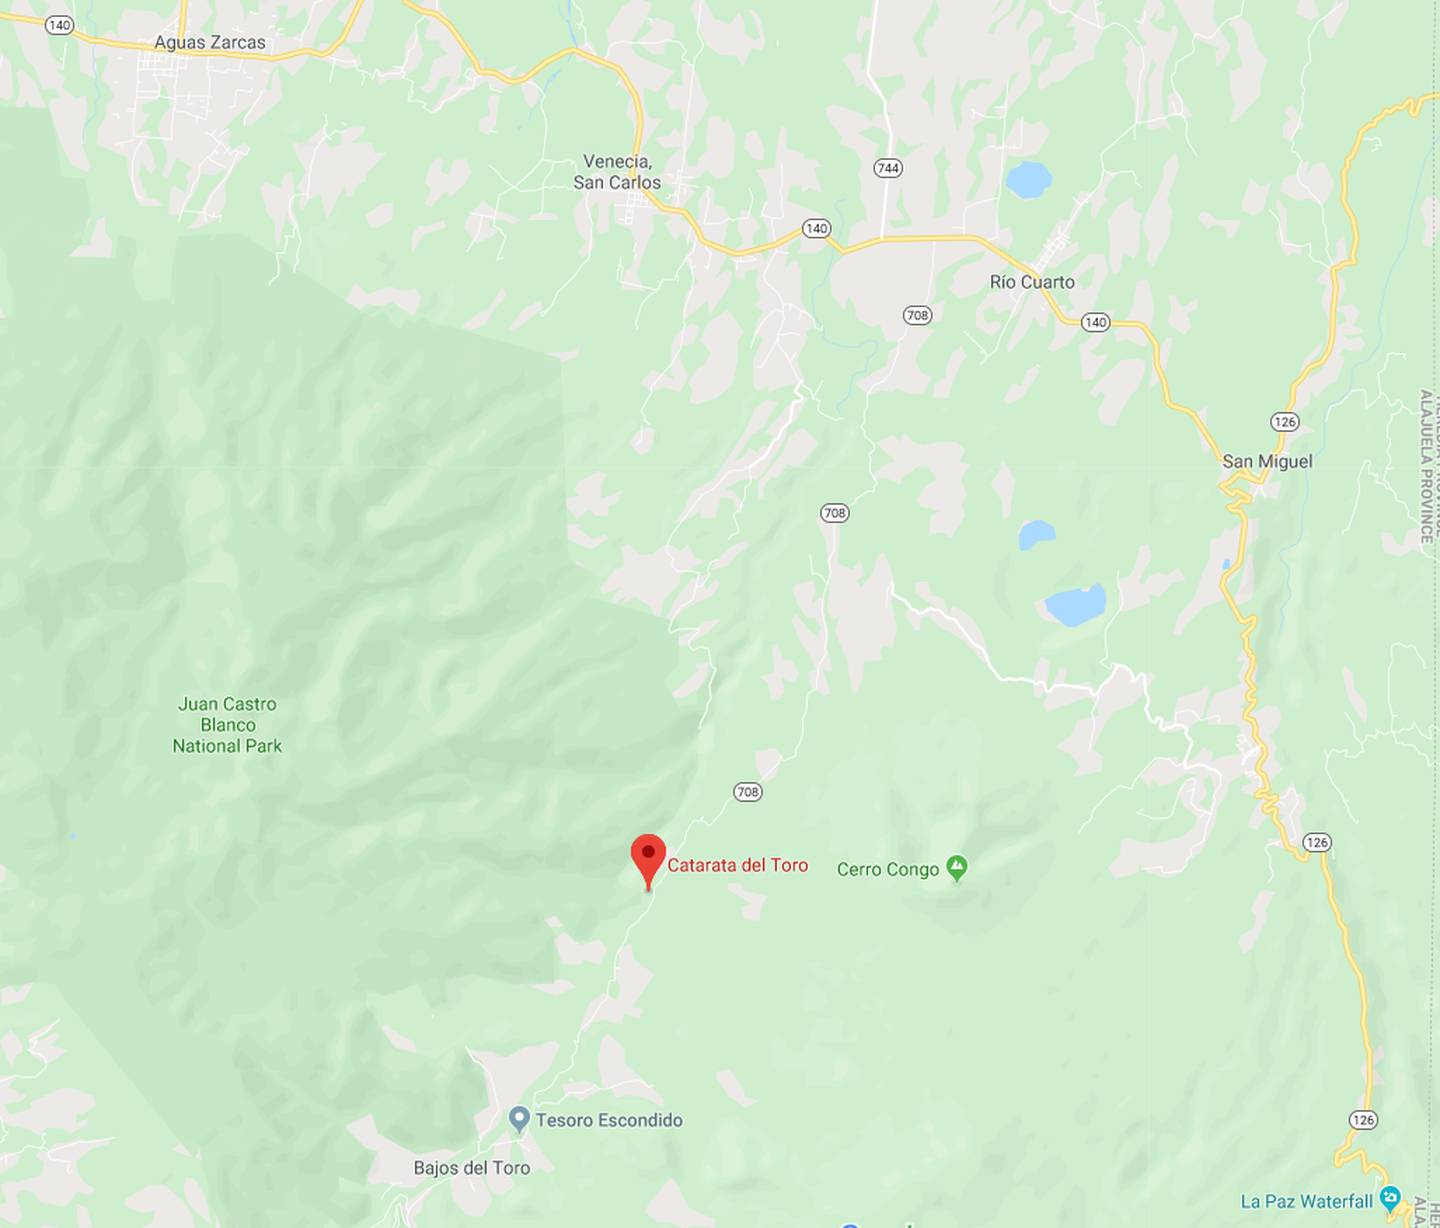 El accidente acuático con tres víctimas ahogadas ocurrió el domingo en la mañana en el punto de caída de la catarata del Toro, en el río del mismo nombre, San Carlos. Google maps.